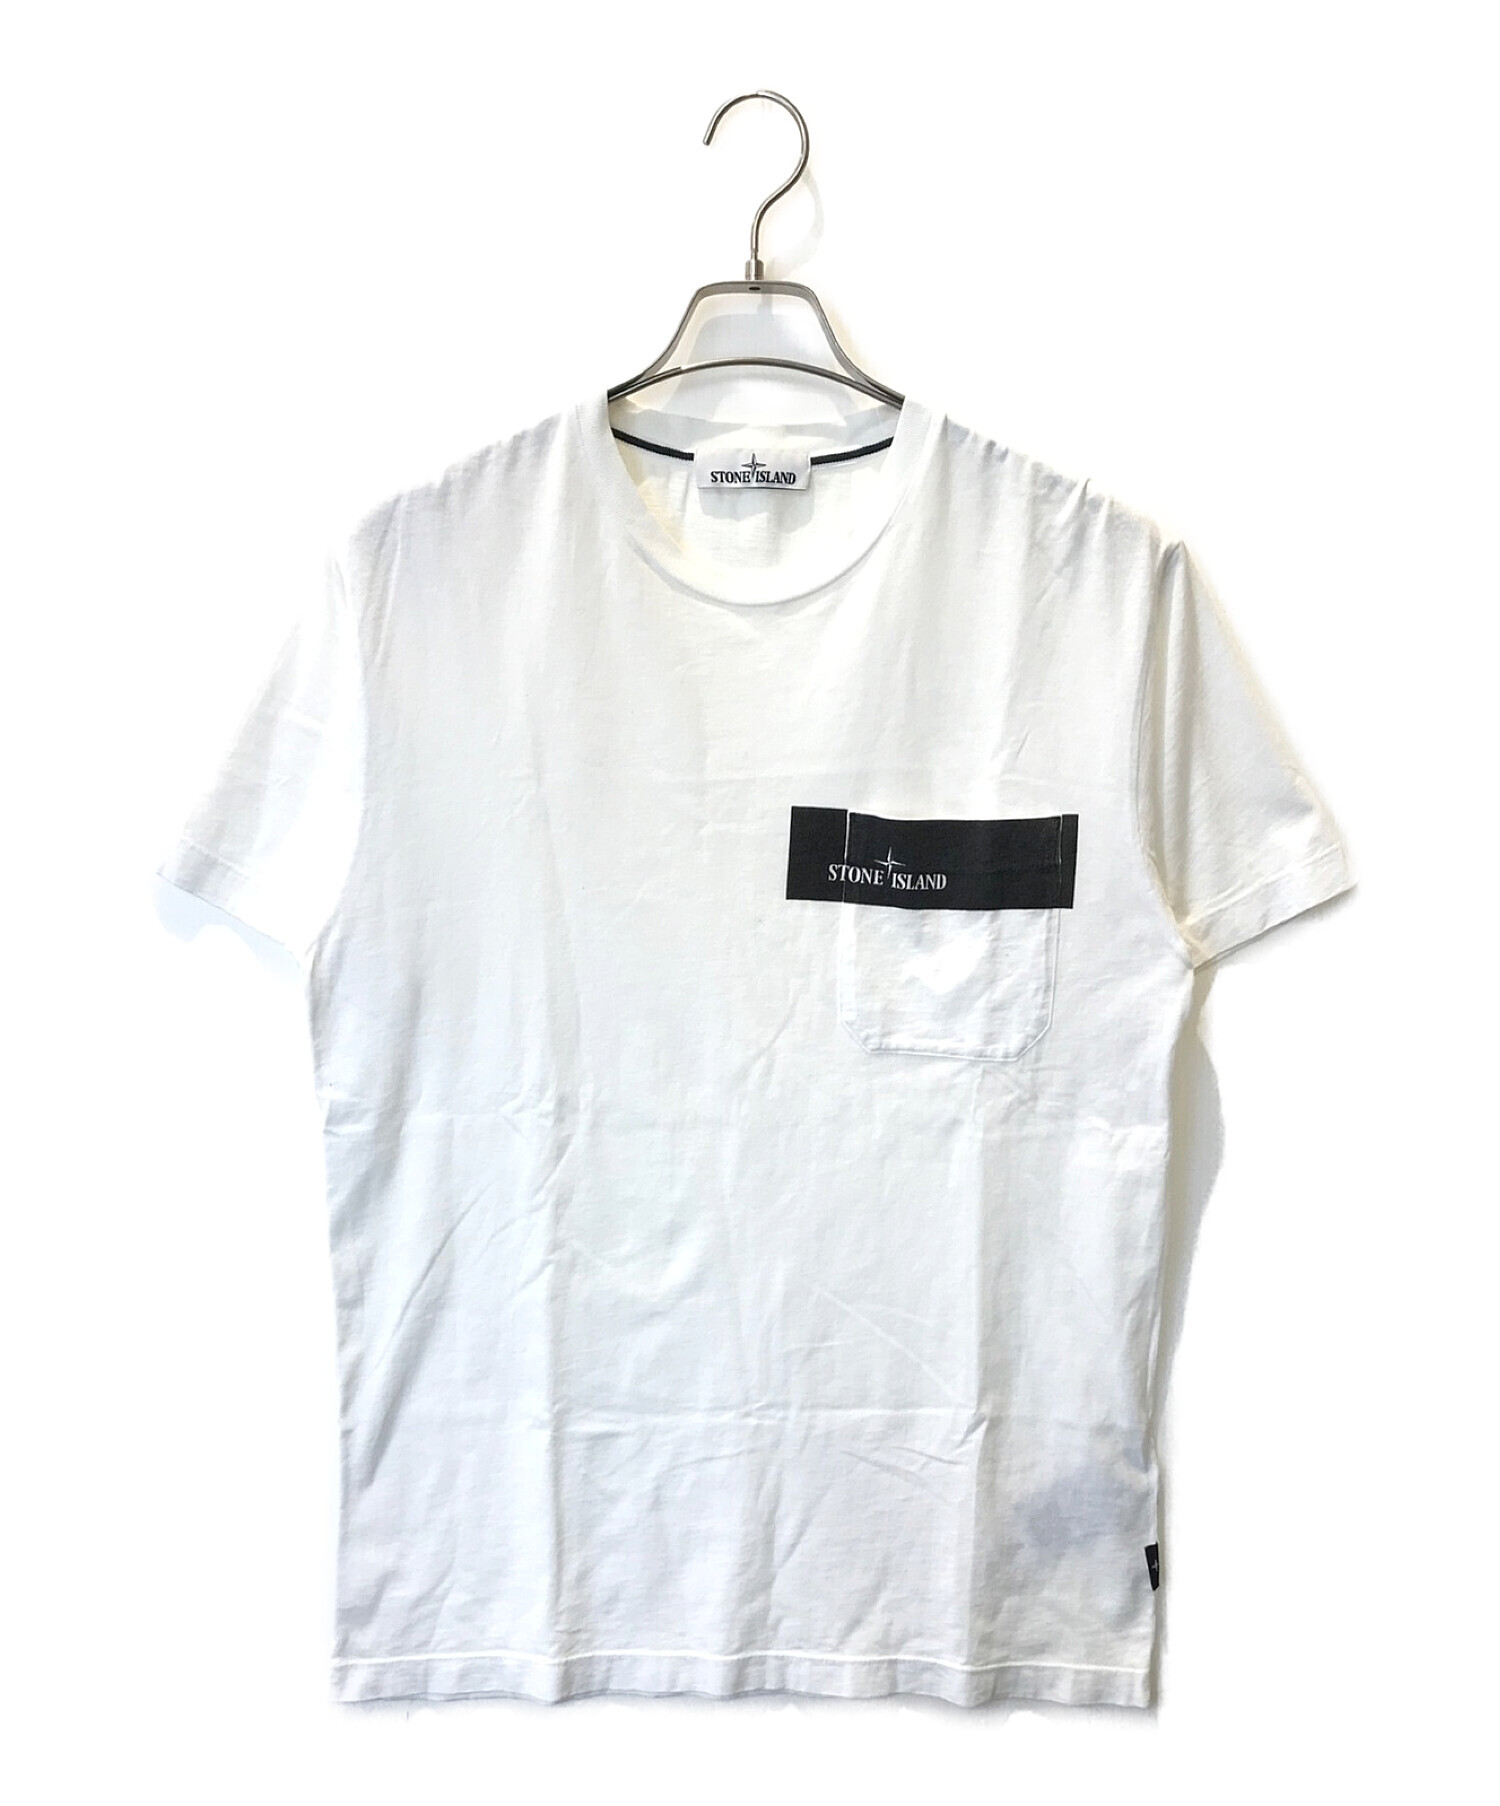 STONE ISLAND (ストーンアイランド) Tシャツ ホワイト サイズ:M